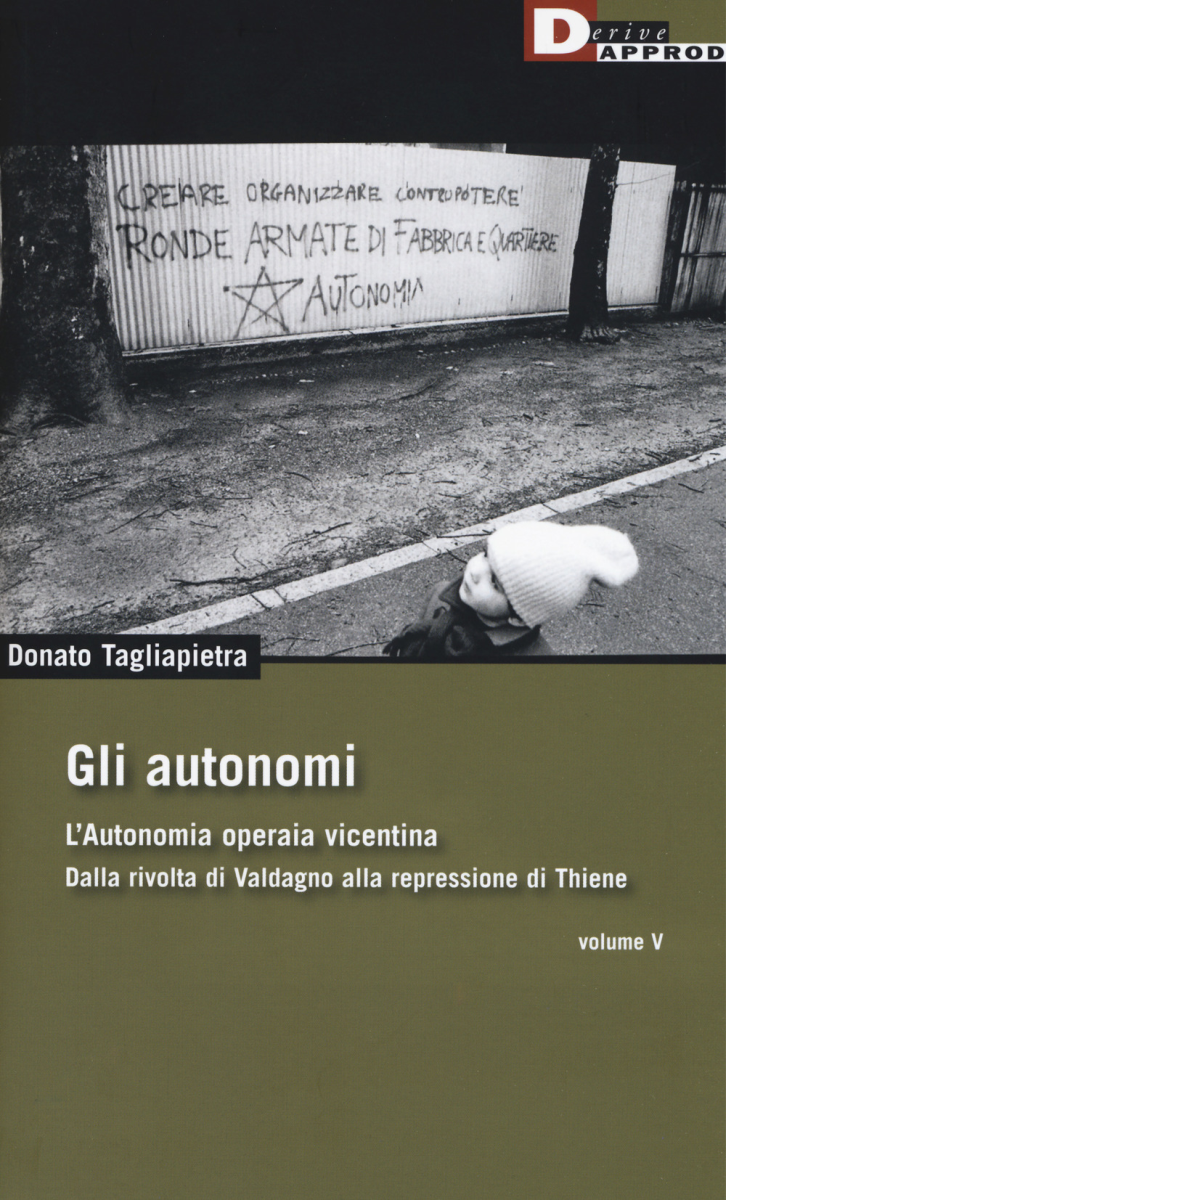 Gli autonomi vol. V - Donato Tagliapietra - DeriveApprodi editore, 2019